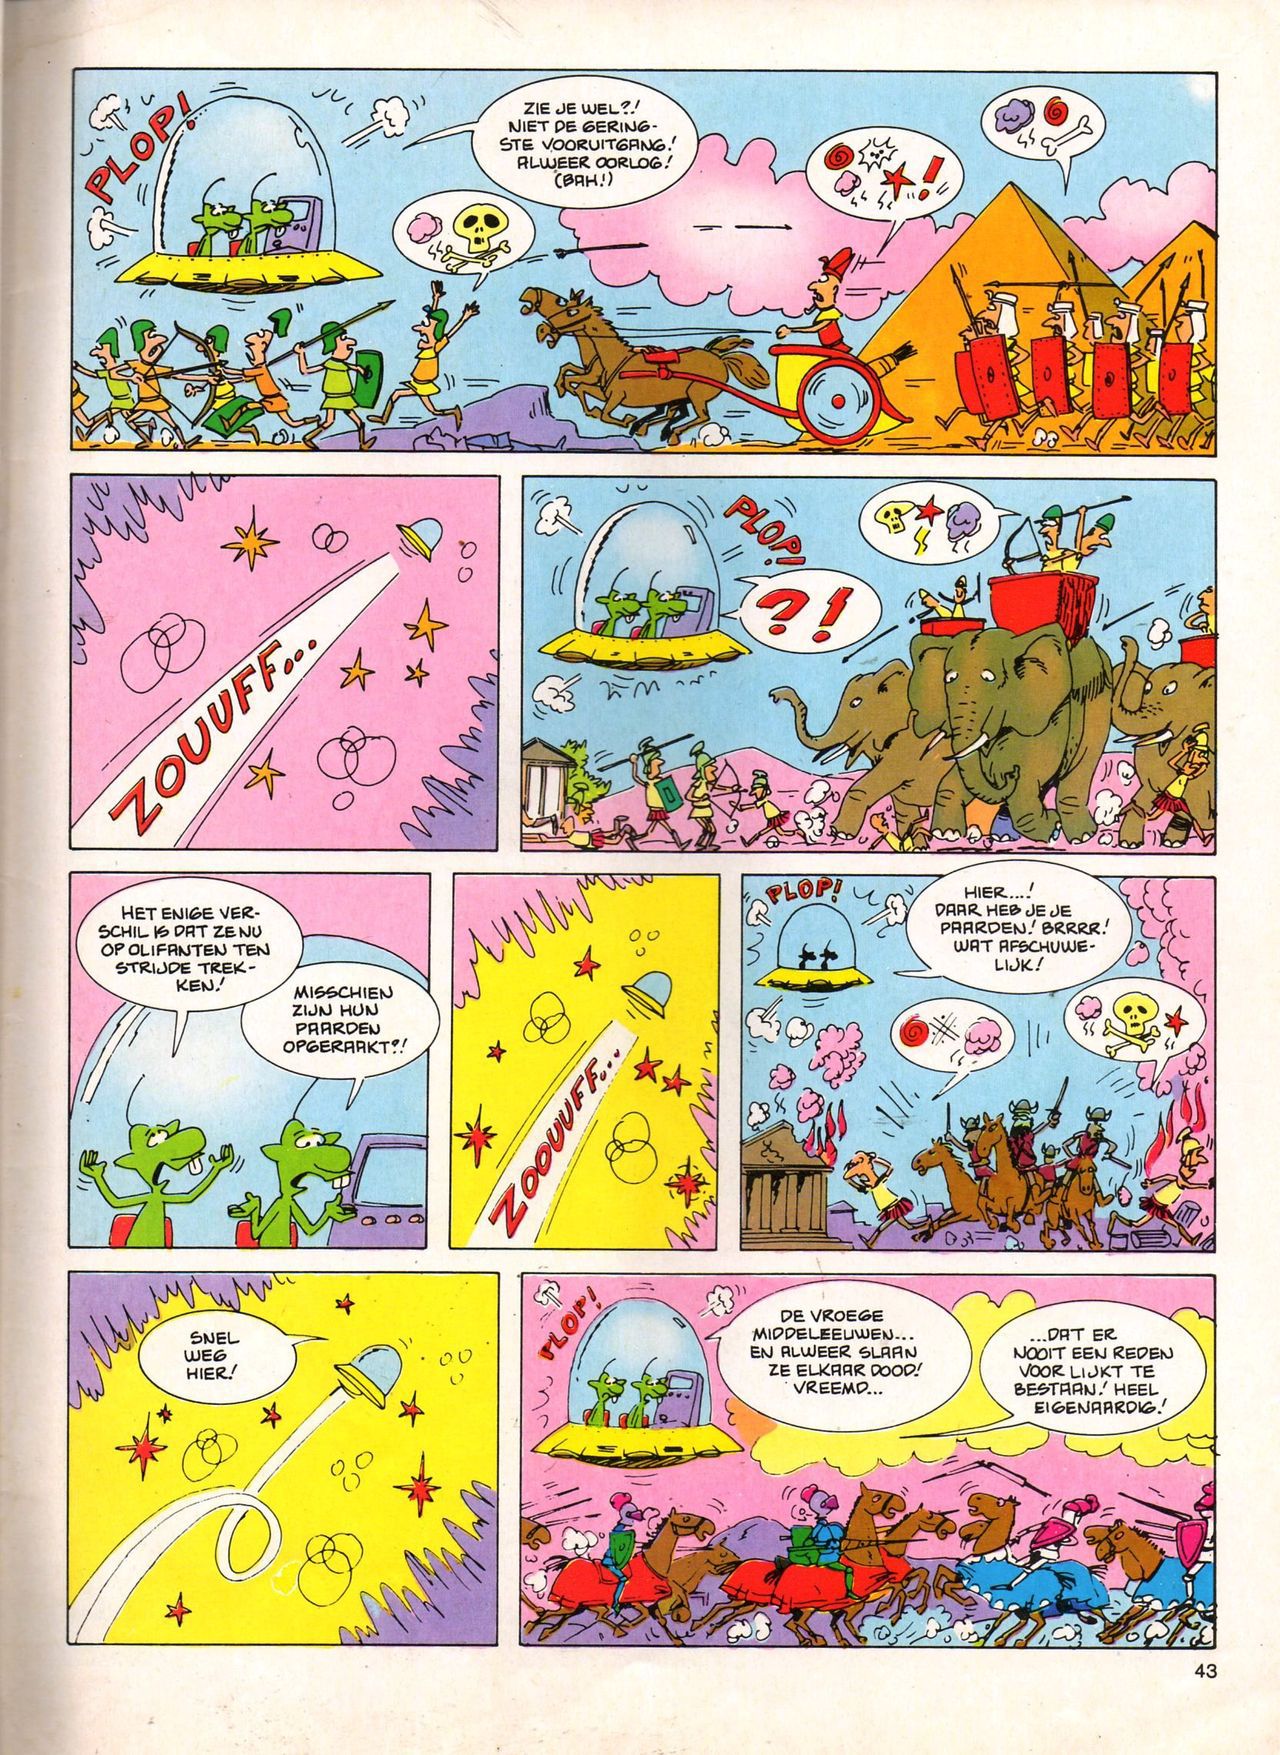 Het Is Groen En Het.. - 04 - Mag Ik Die Ballen.. OH, PARDON! (Dutch) Een oude humoristische serie van Pat Mallet 43